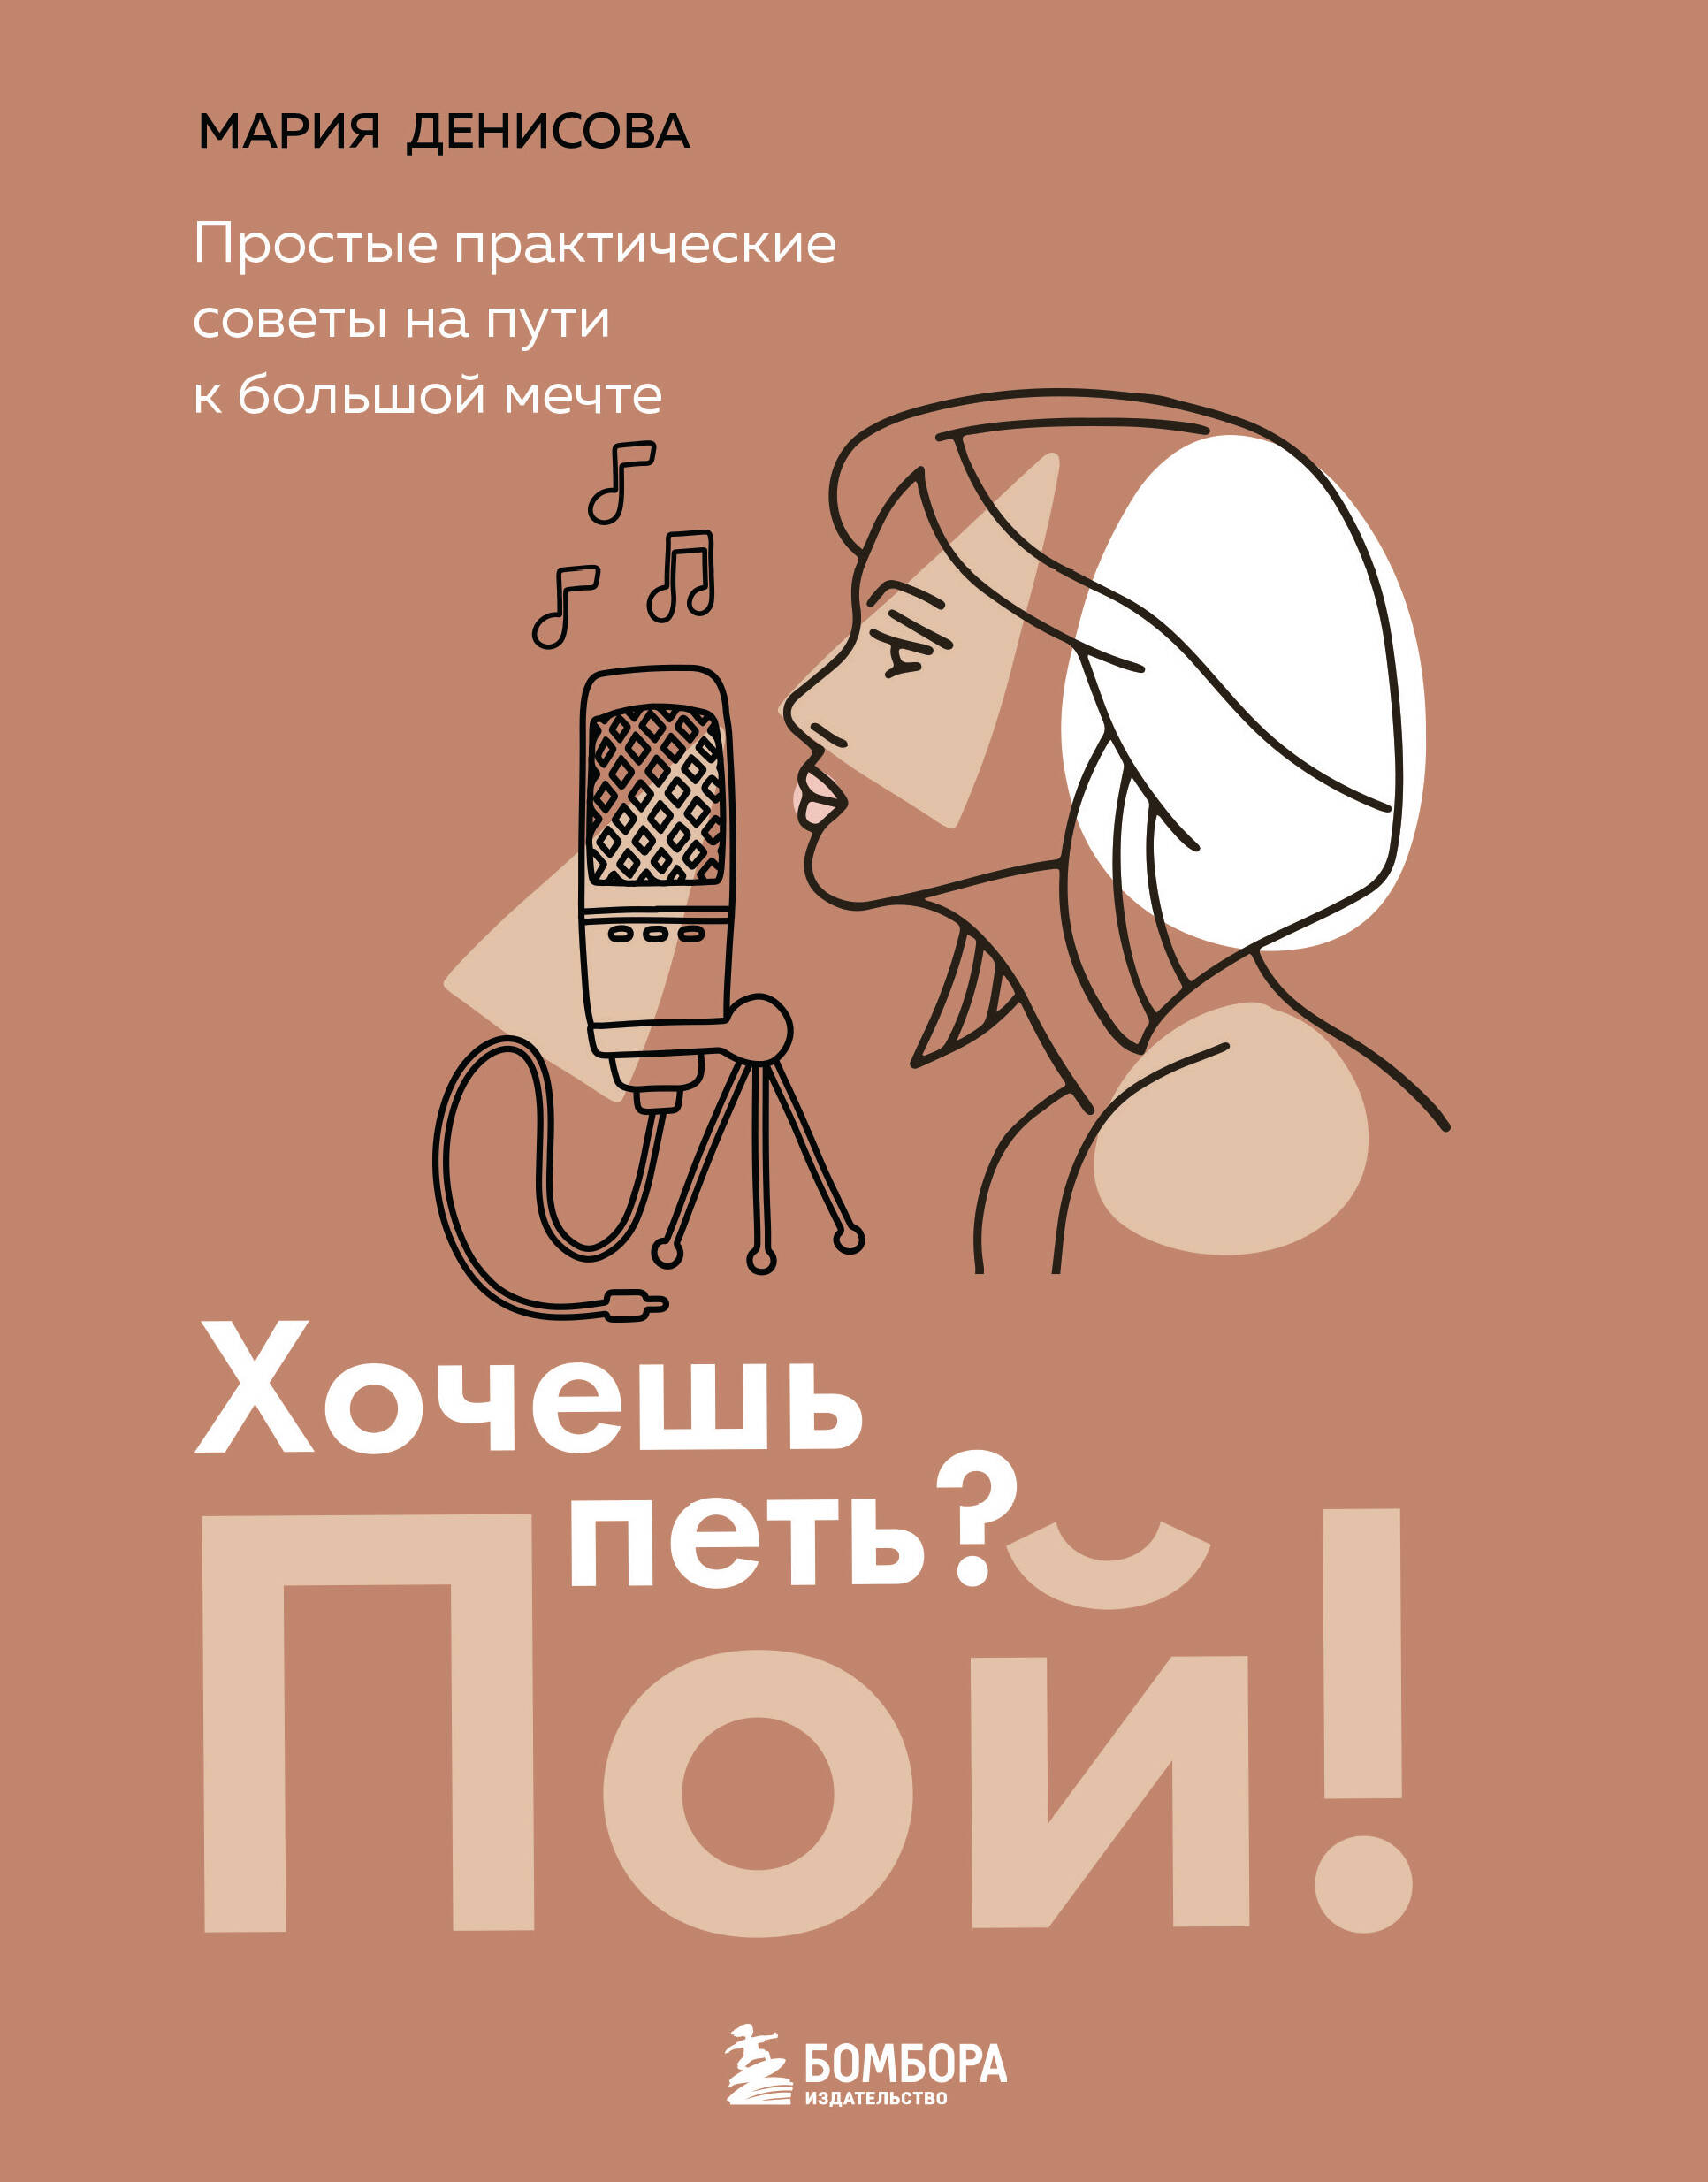 Денисова Мария Михайловна - Хочешь петь? Пой!